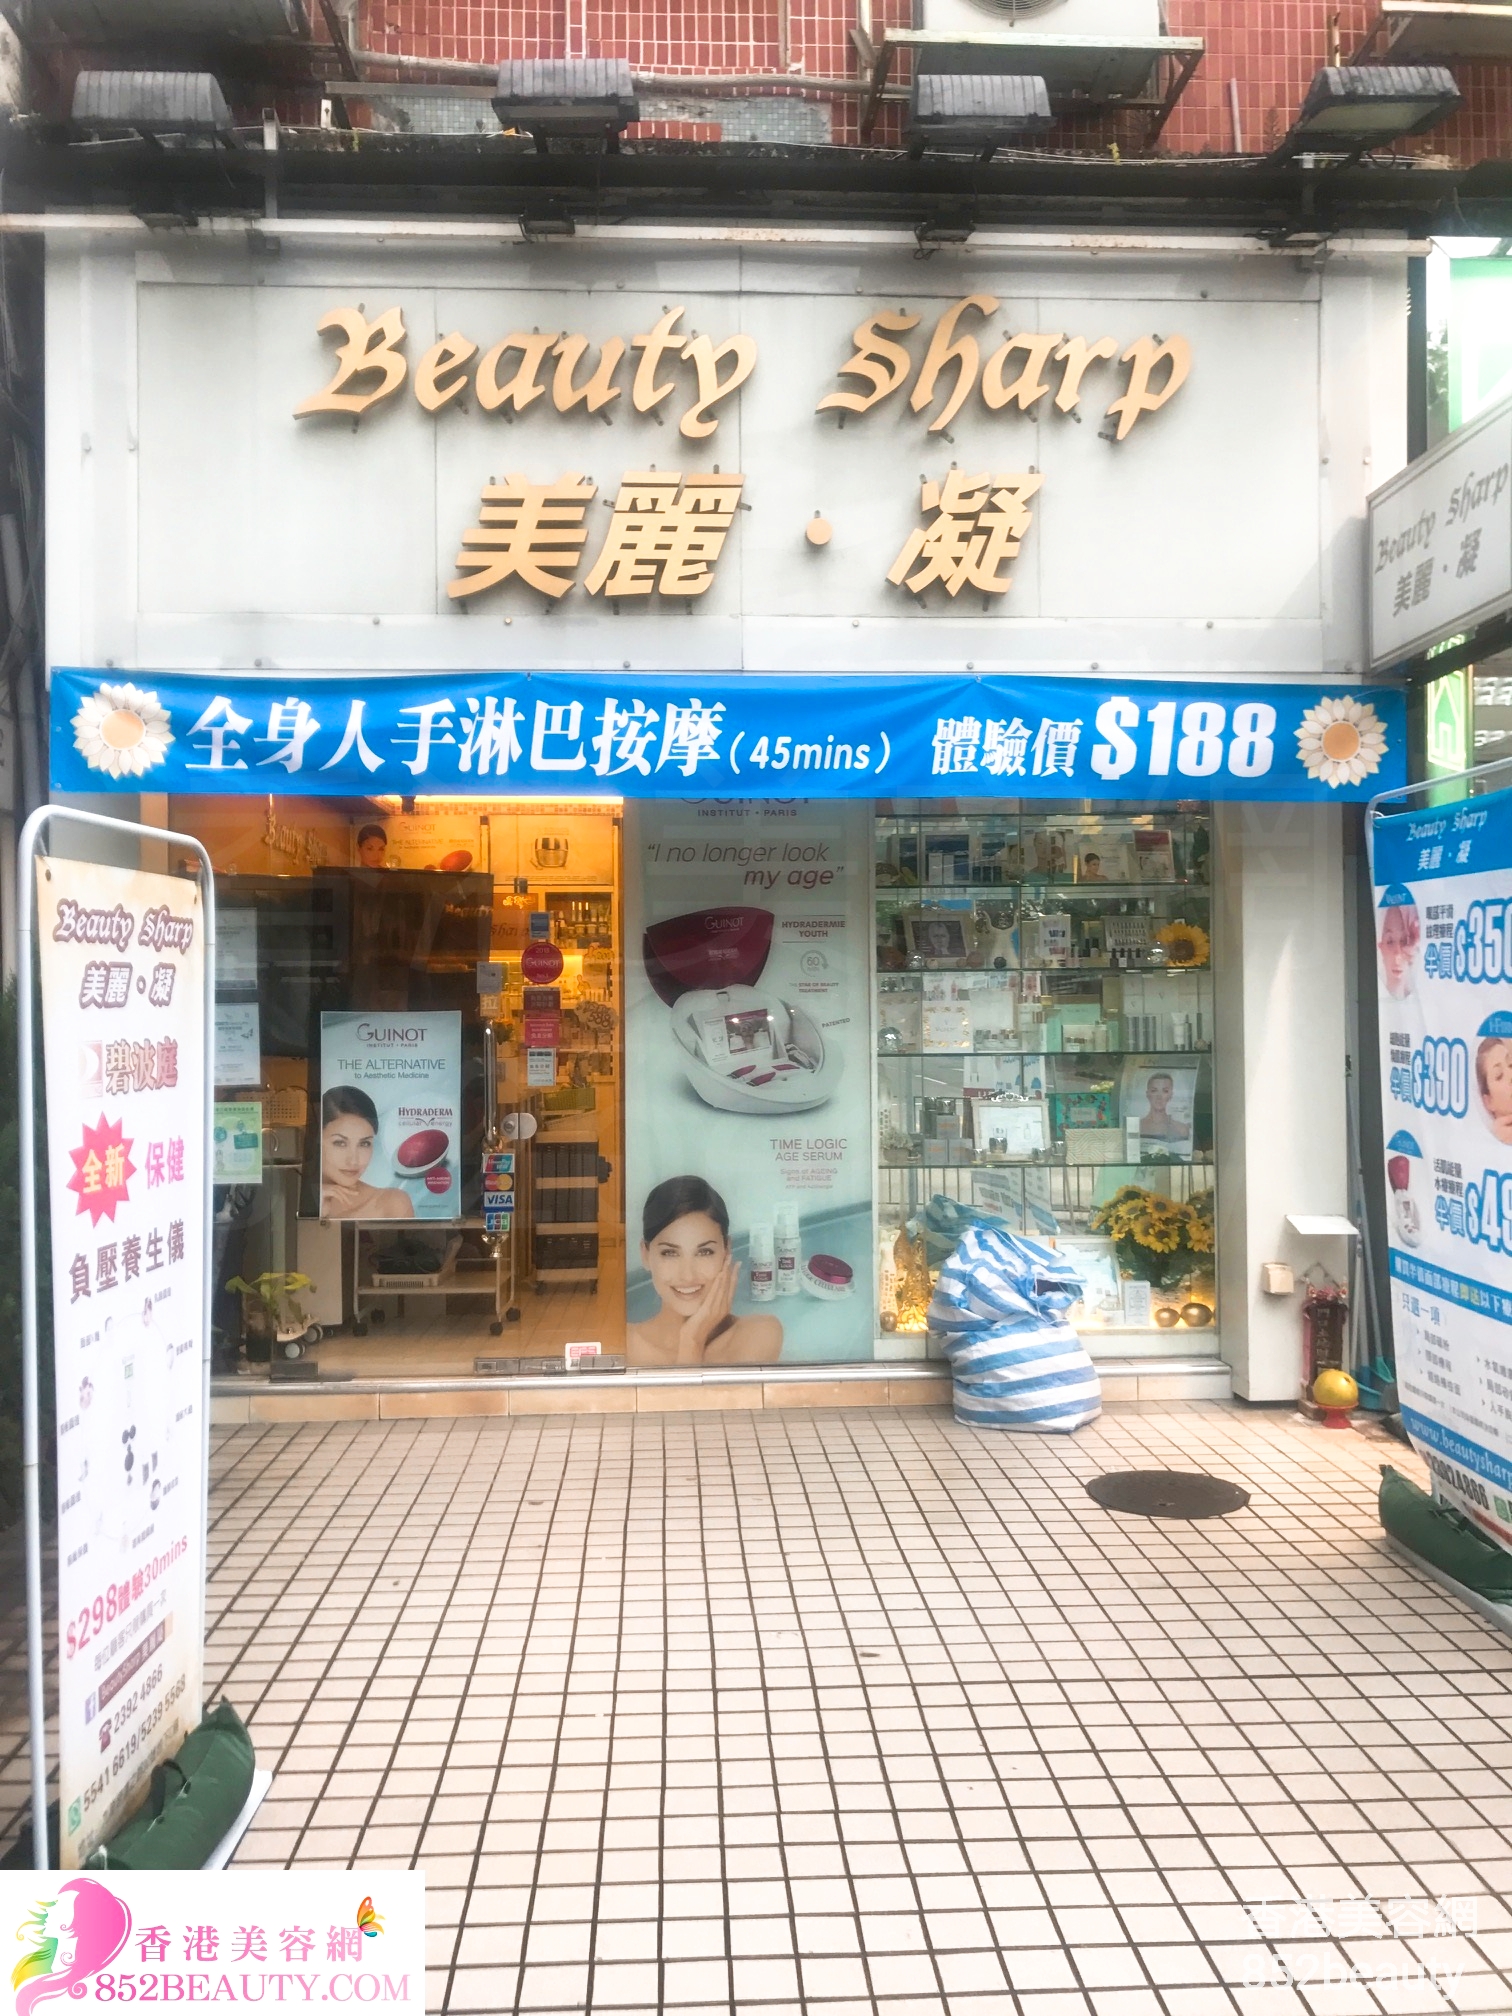 香港美容網 Hong Kong Beauty Salon 美容院 / 美容師: Beauty Sharp 美麗。凝